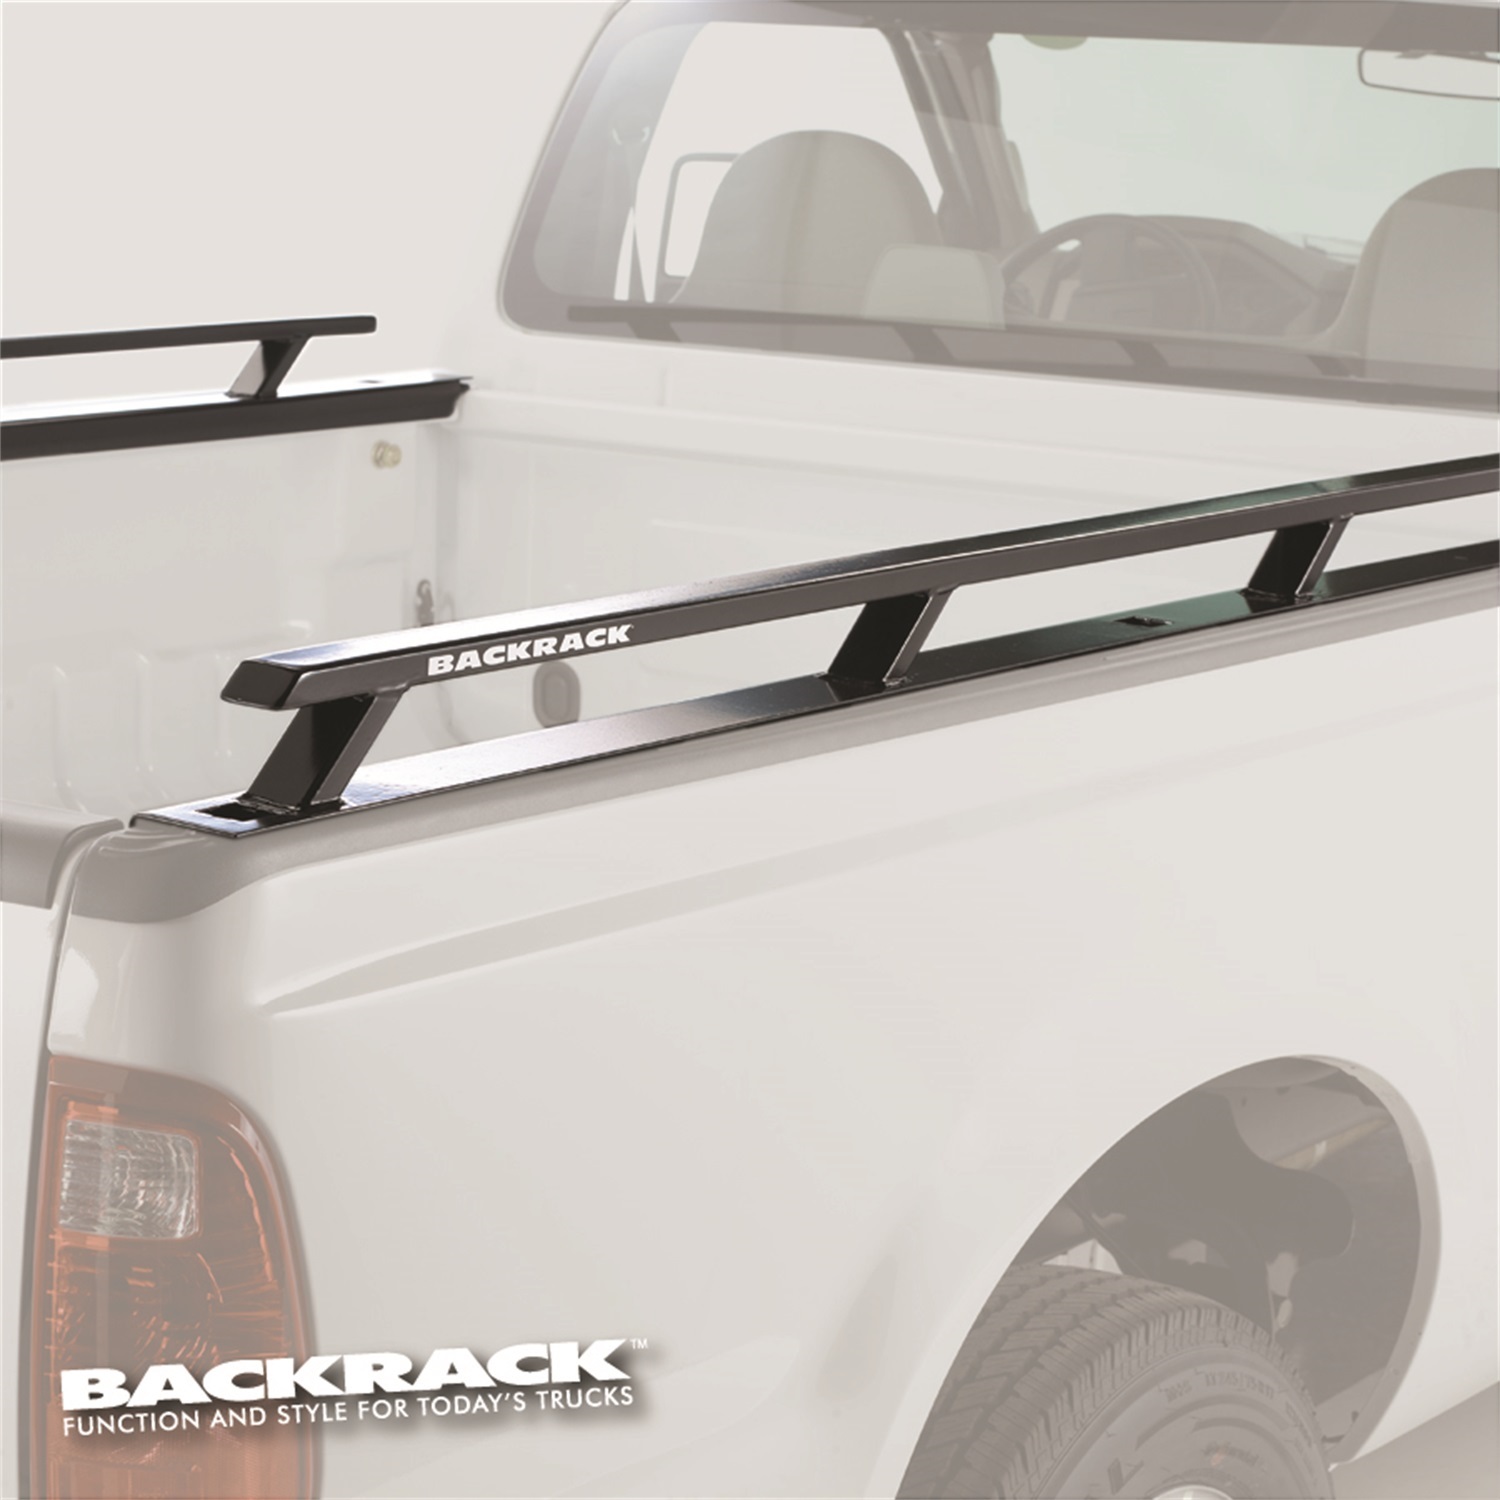 Backrack Backrack 80512 Side Rails Fits 04-14 F-150